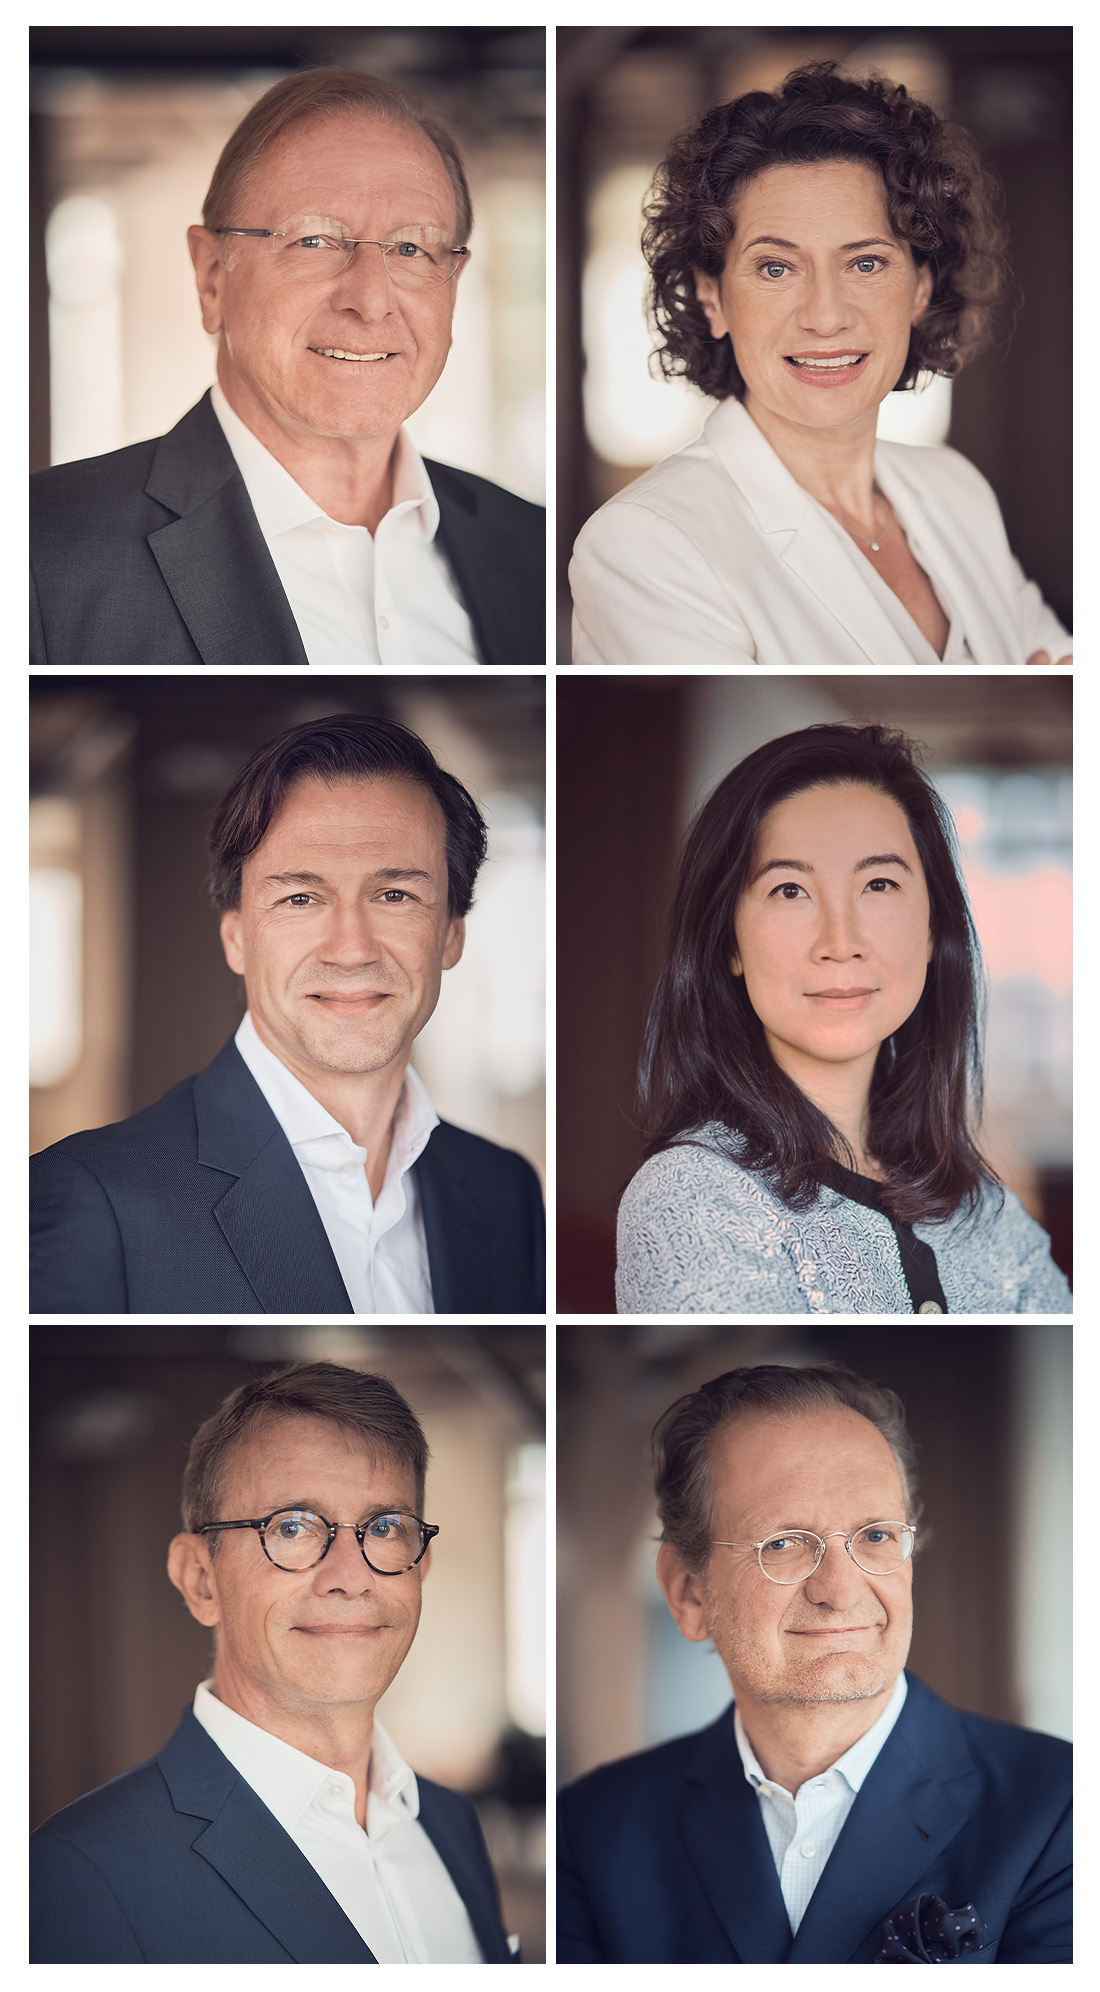 Meet the Board of Directors: Prof. Stefan Feuerstein, Prof. Dr. Andréa Belliger, Florian Seubert, Rongrong Hu, Dr. Christian Mielsch, Walter Oberhänsli (from left to right)